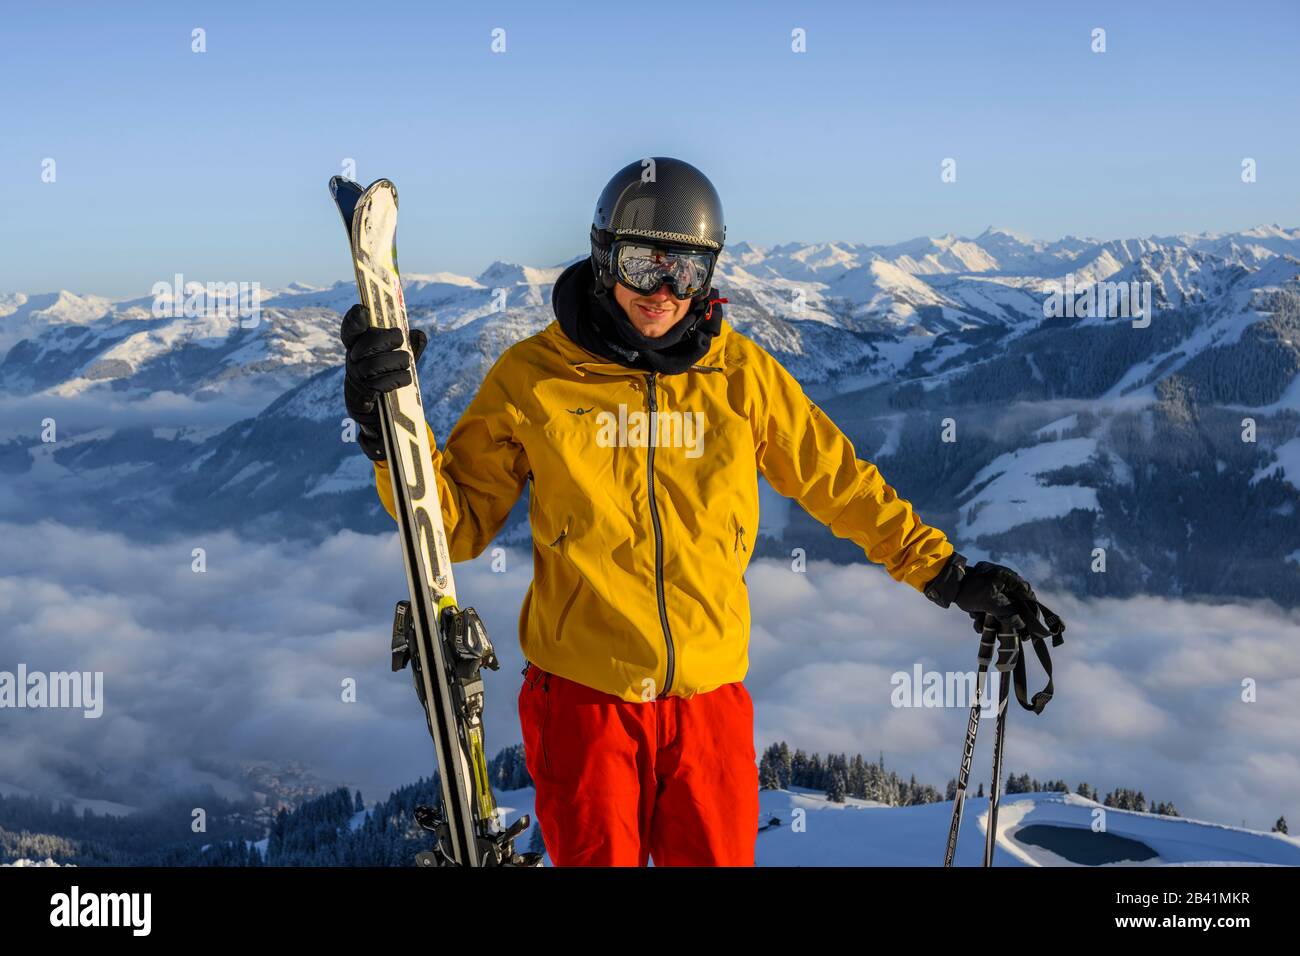 Skifahrer vor dem Bergpanorama, hält Ski, schaut in die Kamera, Gipfel hohe Salve, SkiWelt Wilder Kaiser Brixenthal, Hochbrixen, Tyrol, Österreich Stockfoto